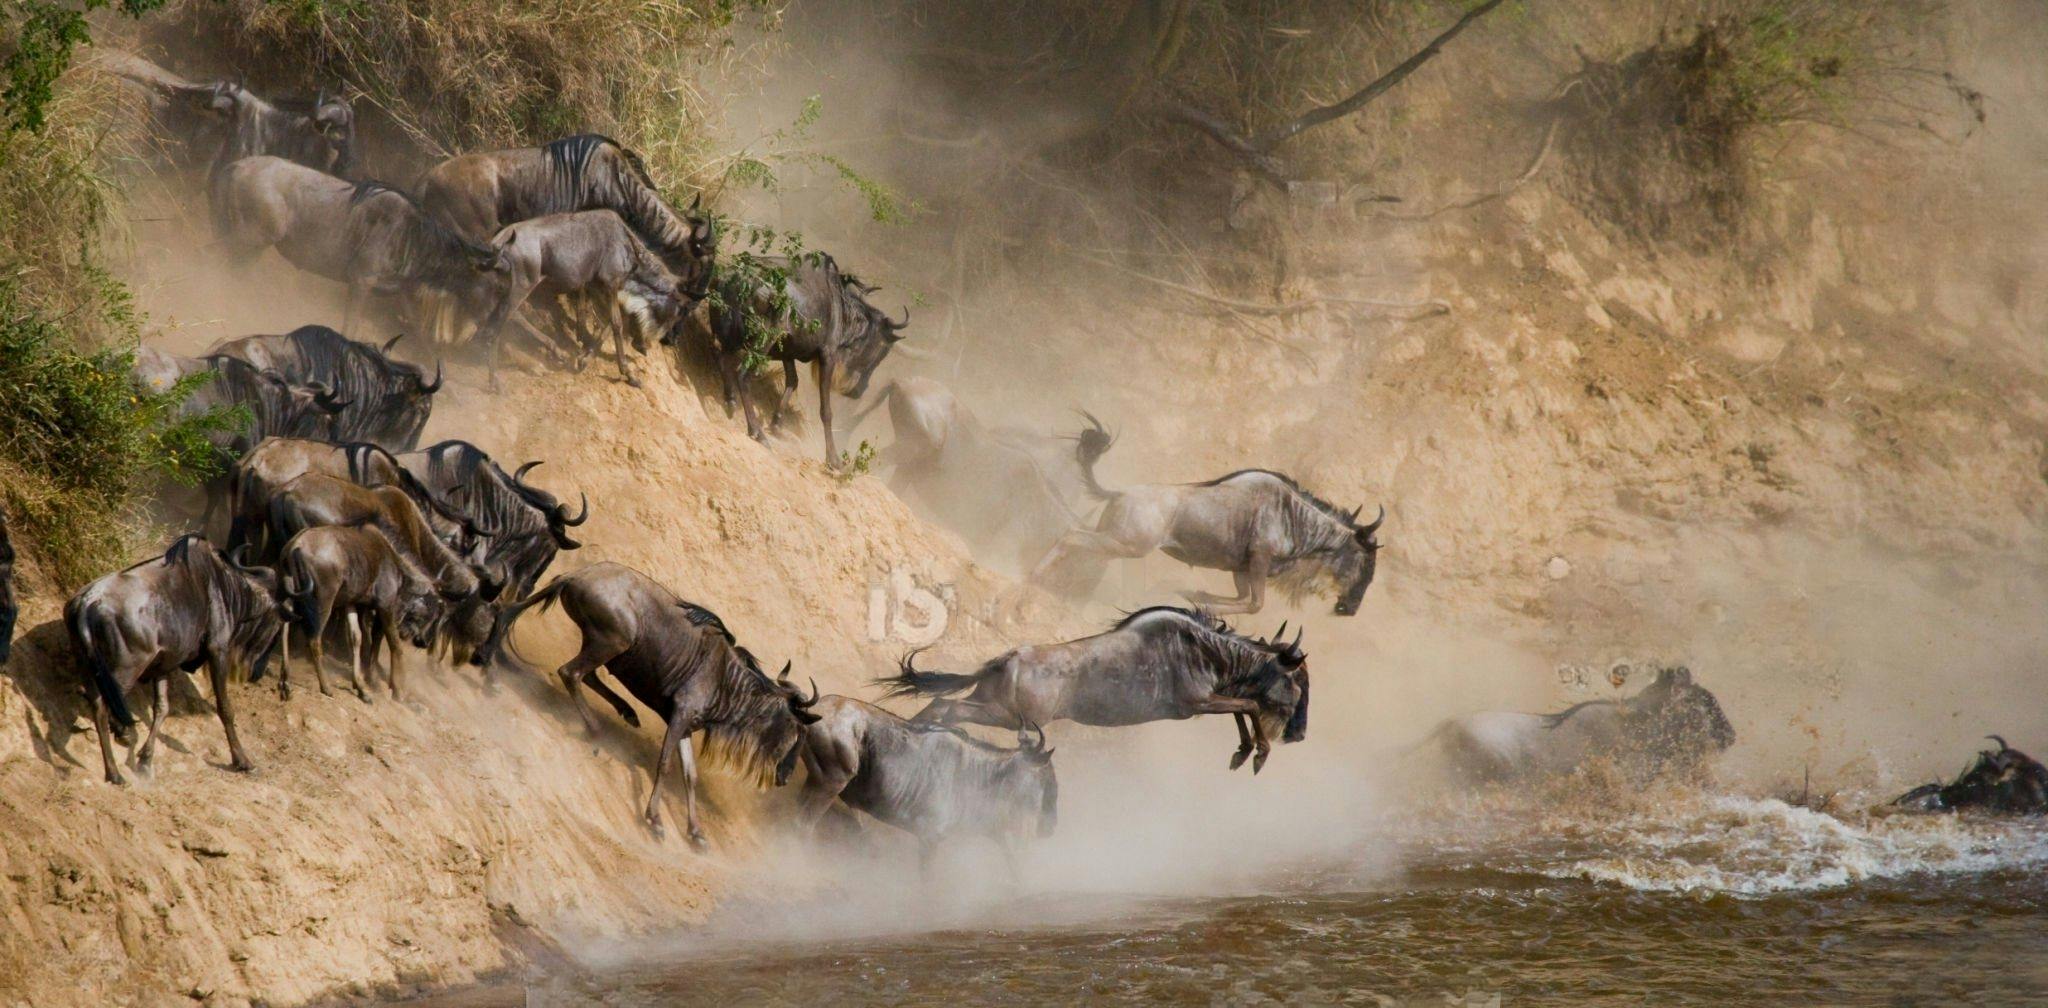 Serengeti Wildebeests Migration